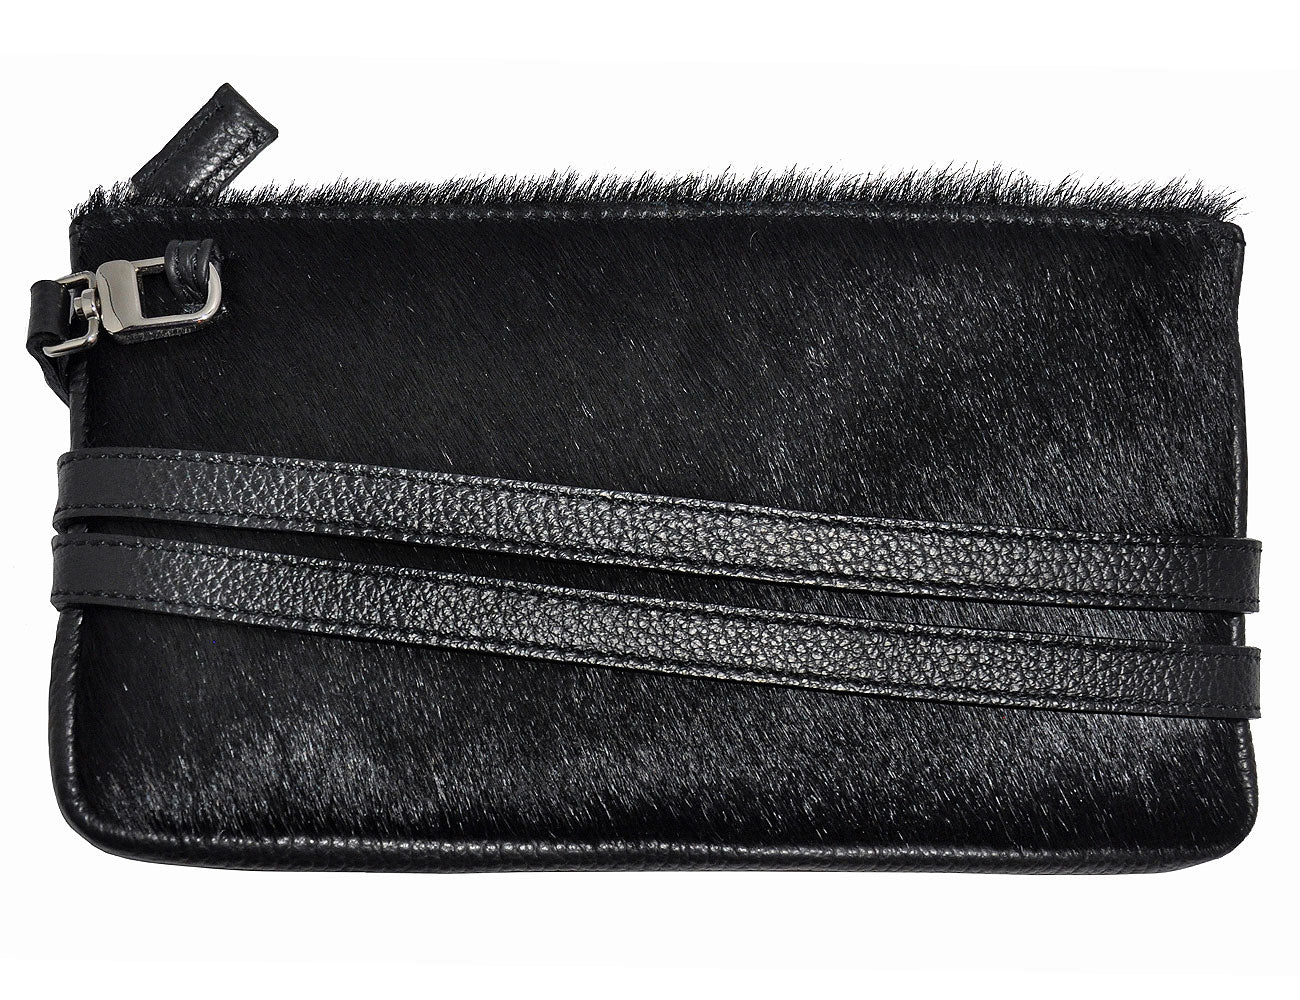 minibag Pelz black, Pelztasche schwarz, Clutch aus Pelz, Geldtasche zum Umhängen, minibag Pelz